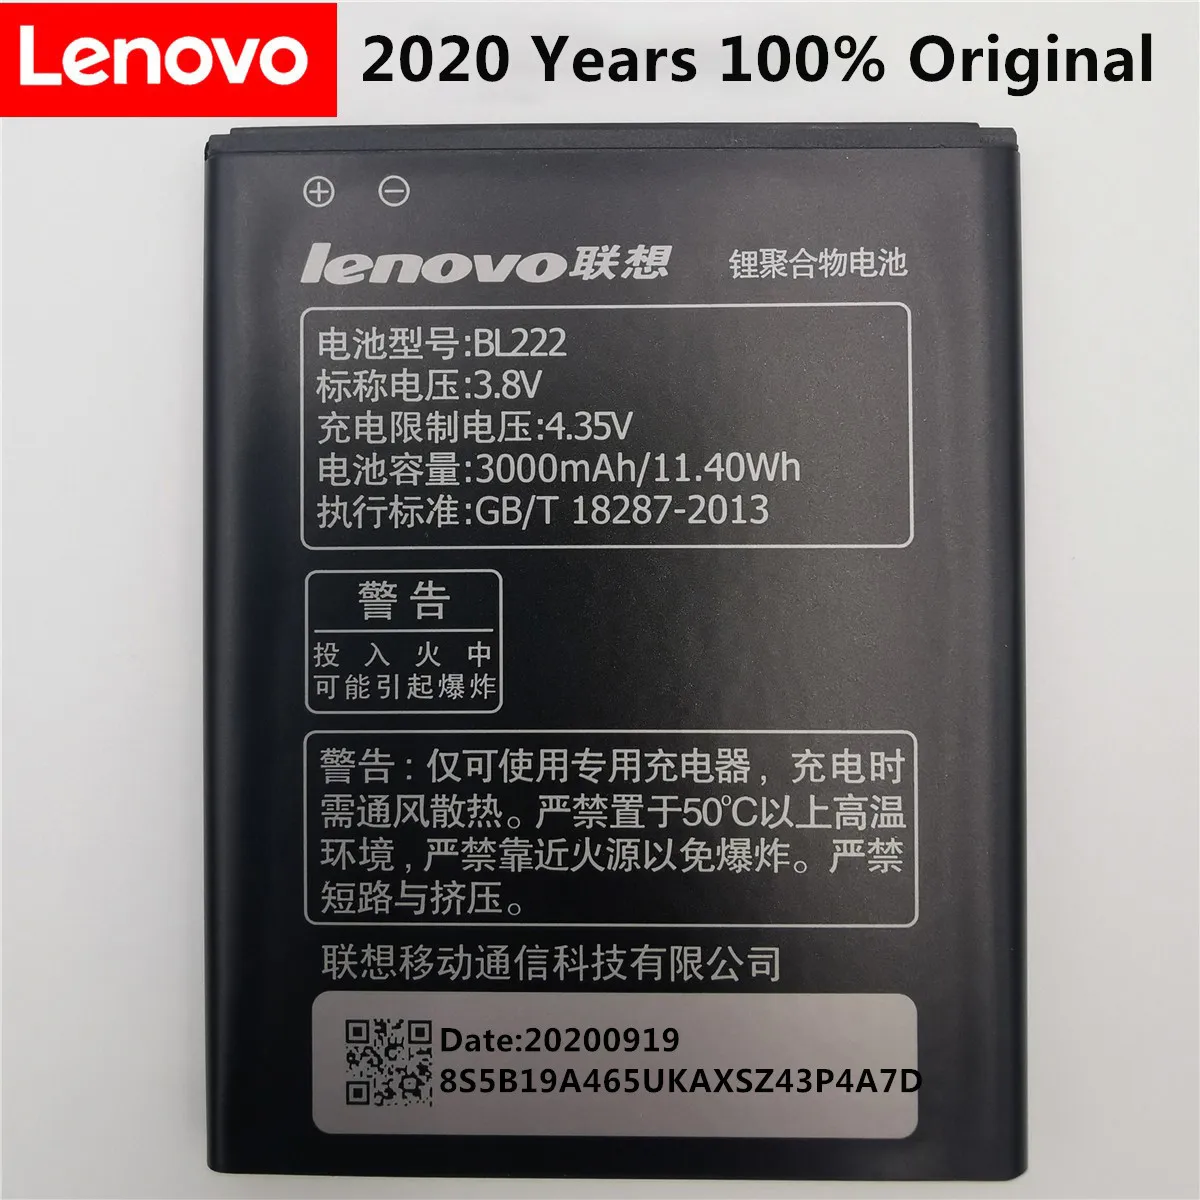 

Аккумулятор 2020 для Lenovo S660 BL222 3000 мАч, сменный литий-ионный аккумулятор большой емкости для смартфона Lenovo S660 S668T +